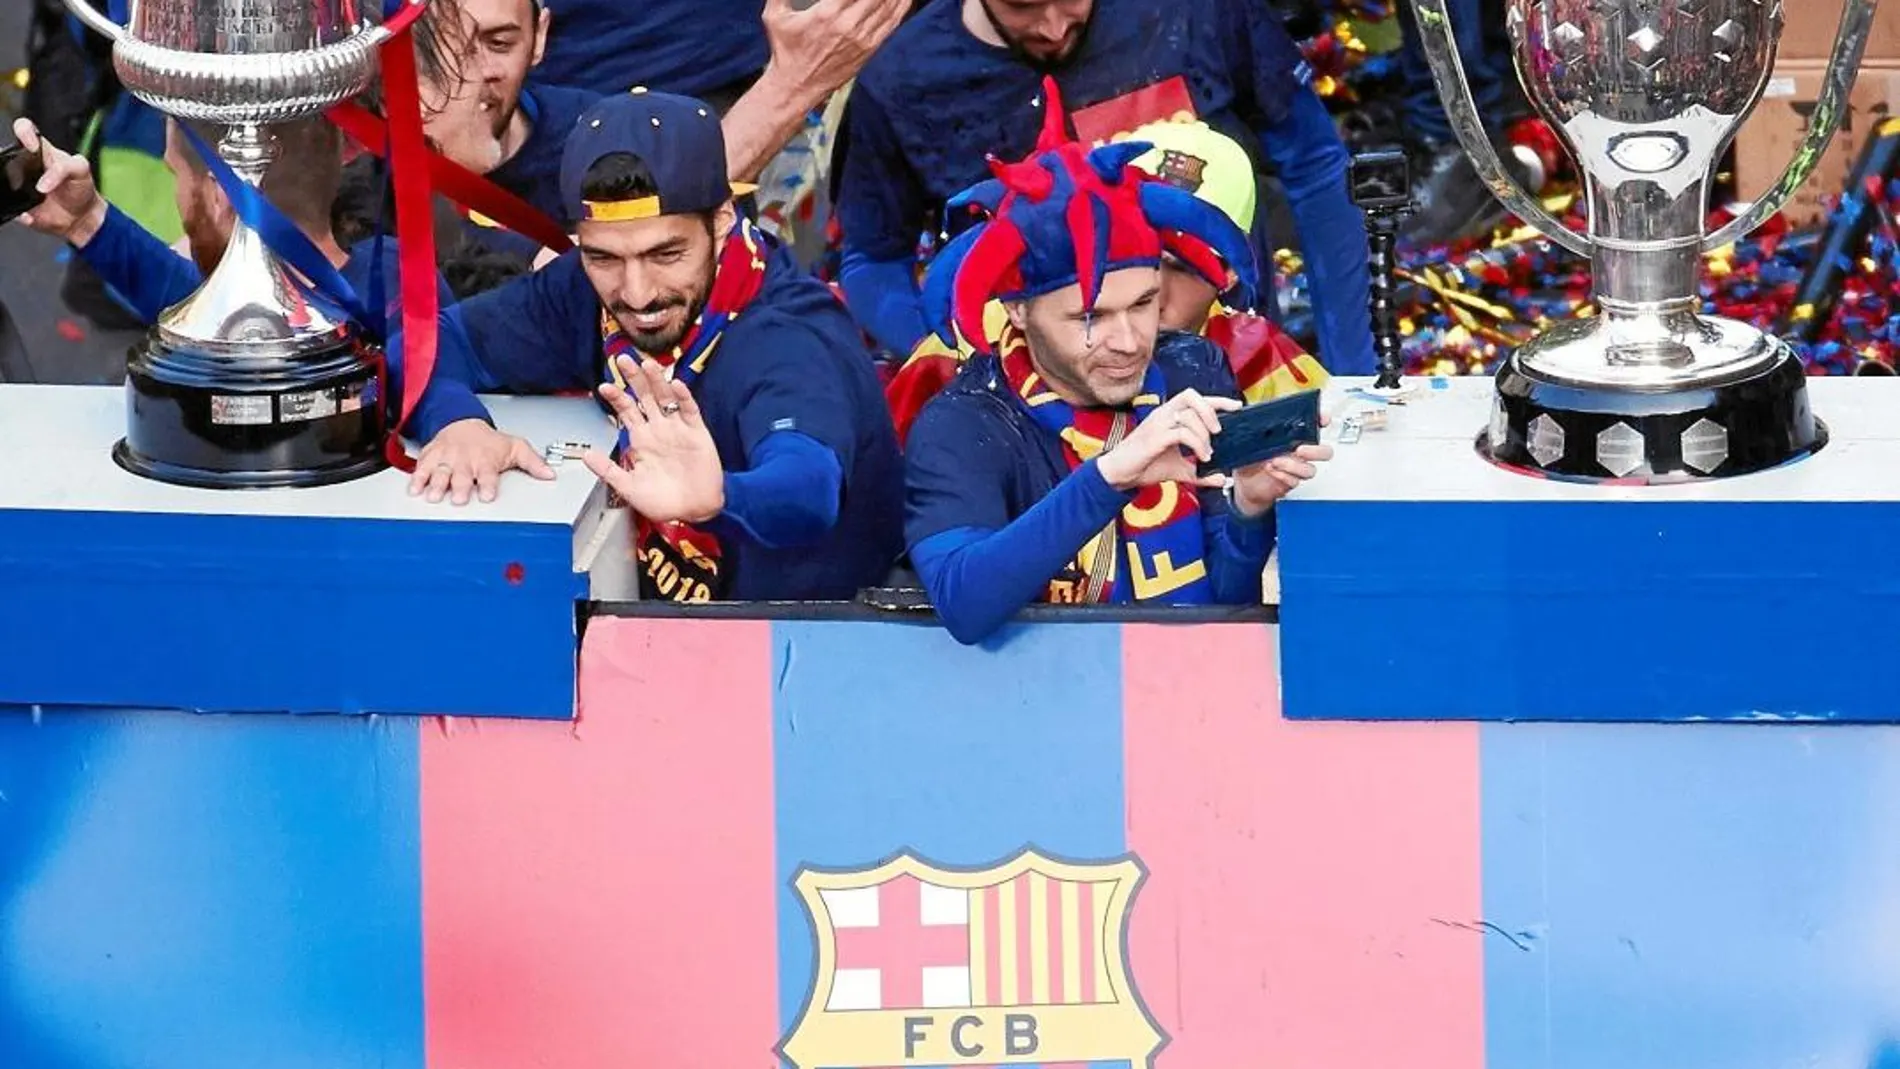 uis Suárez e Iniesta en el autobús con los trofeos que acreditan al Barcelona como ganador del doblete